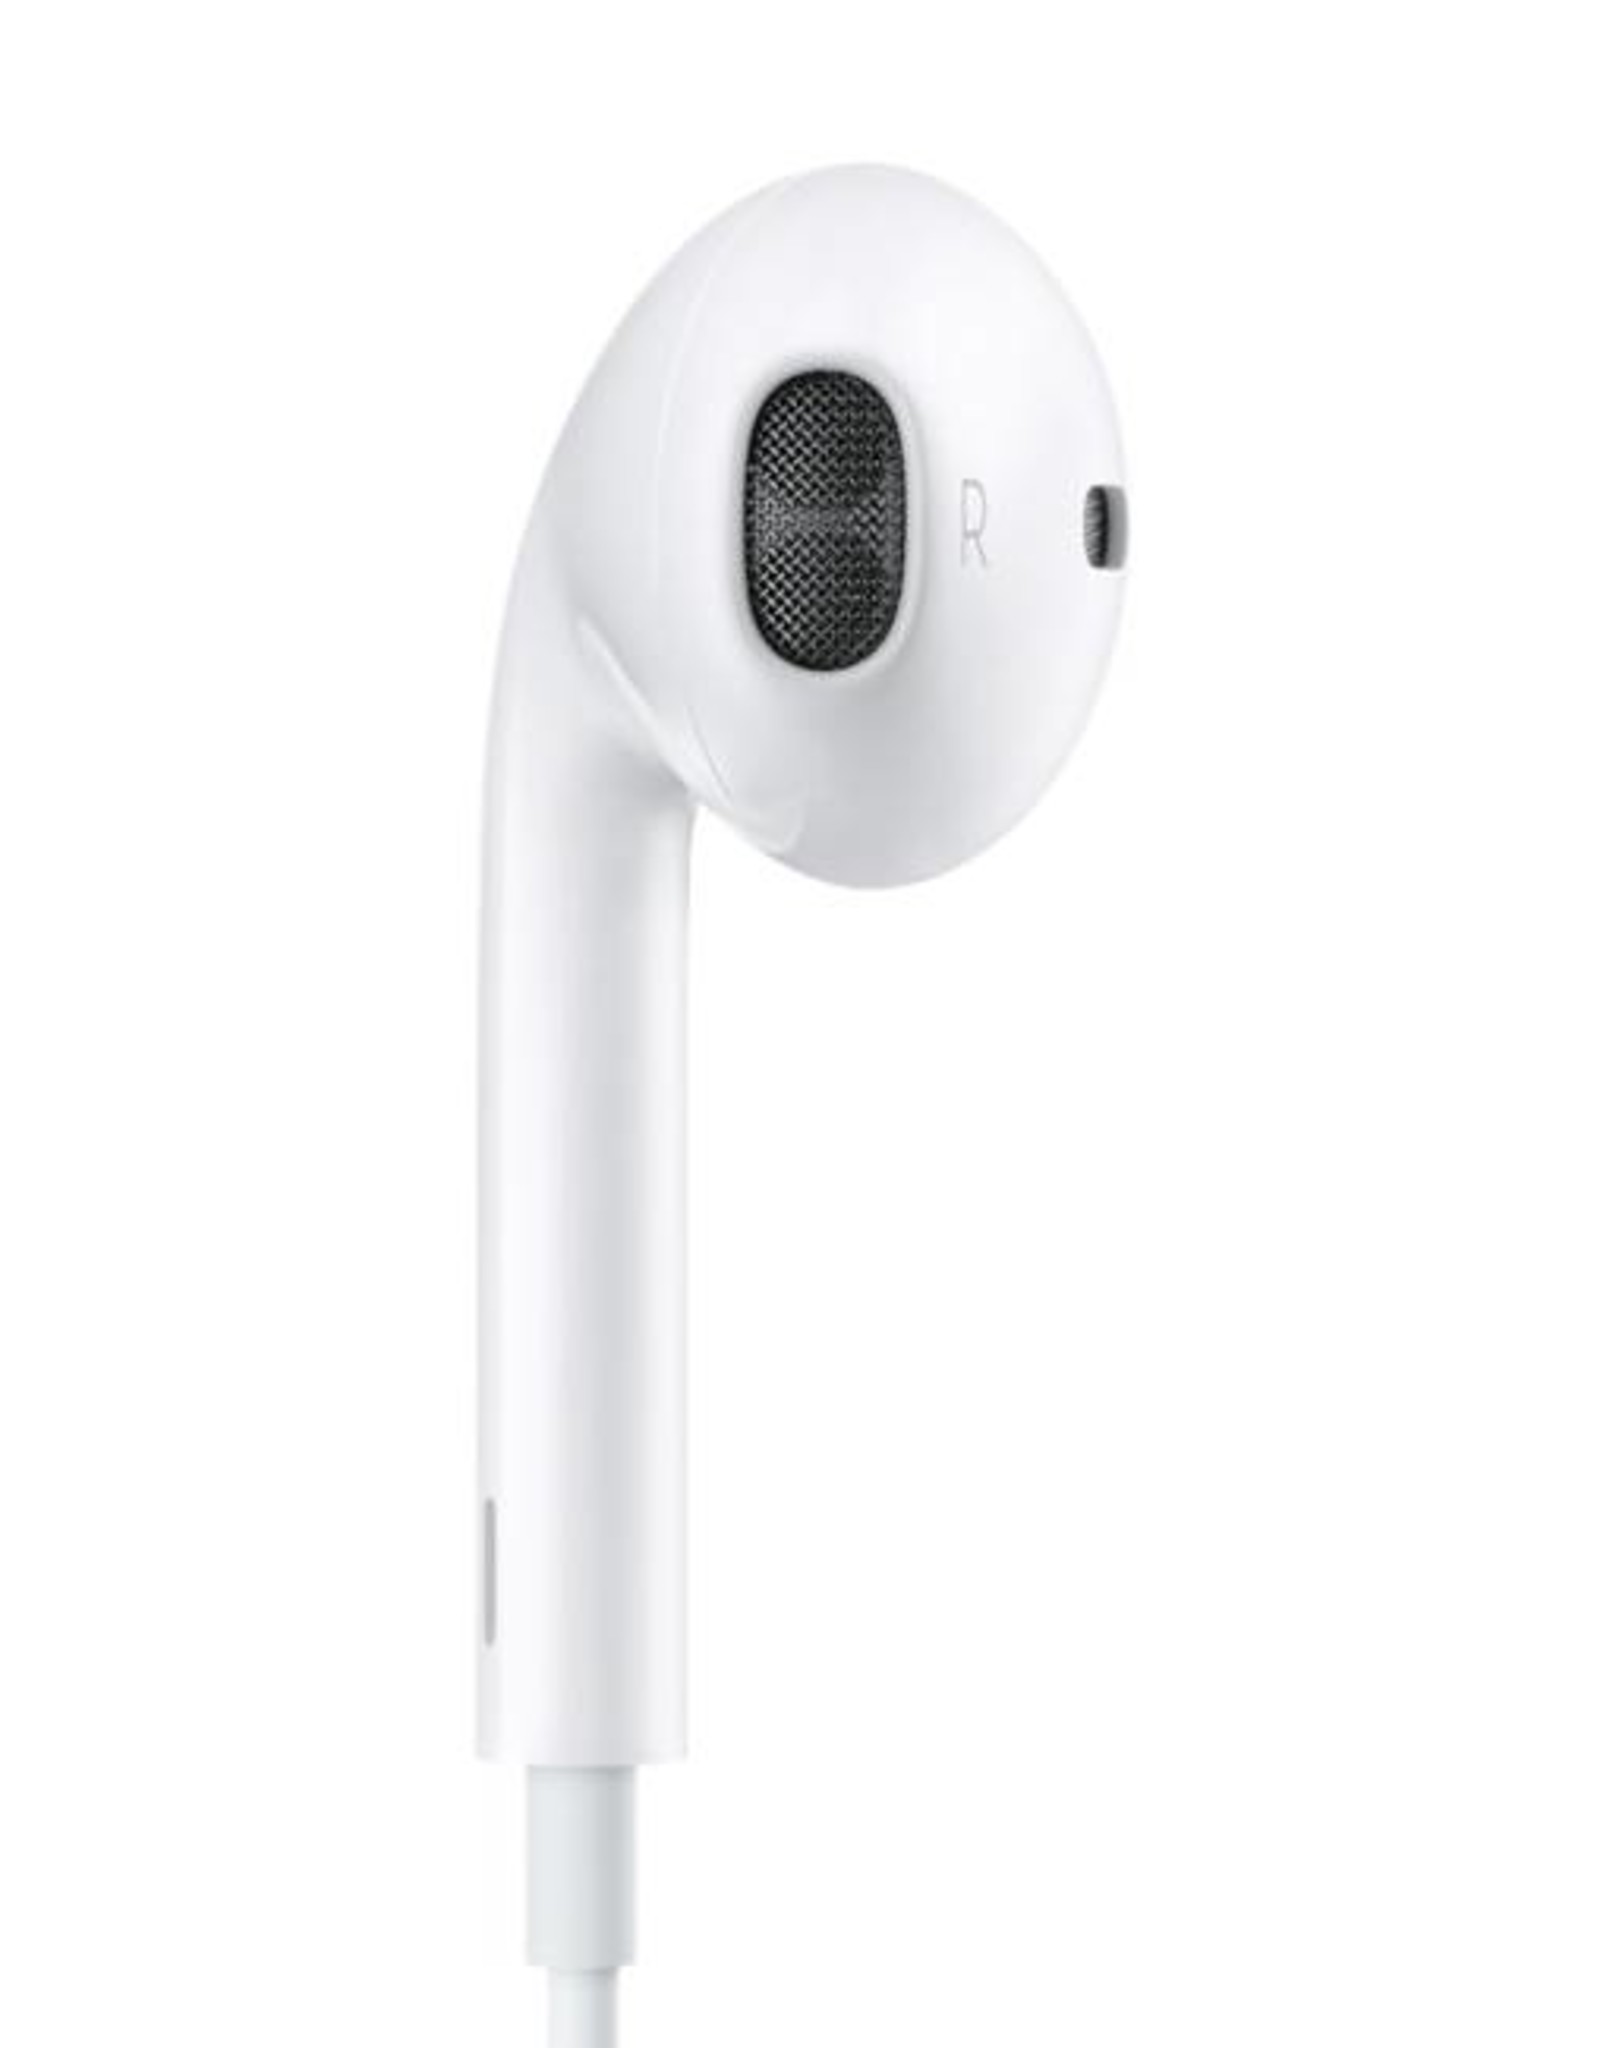 Apple-earpods mit Fernbedienung und Mikrofon